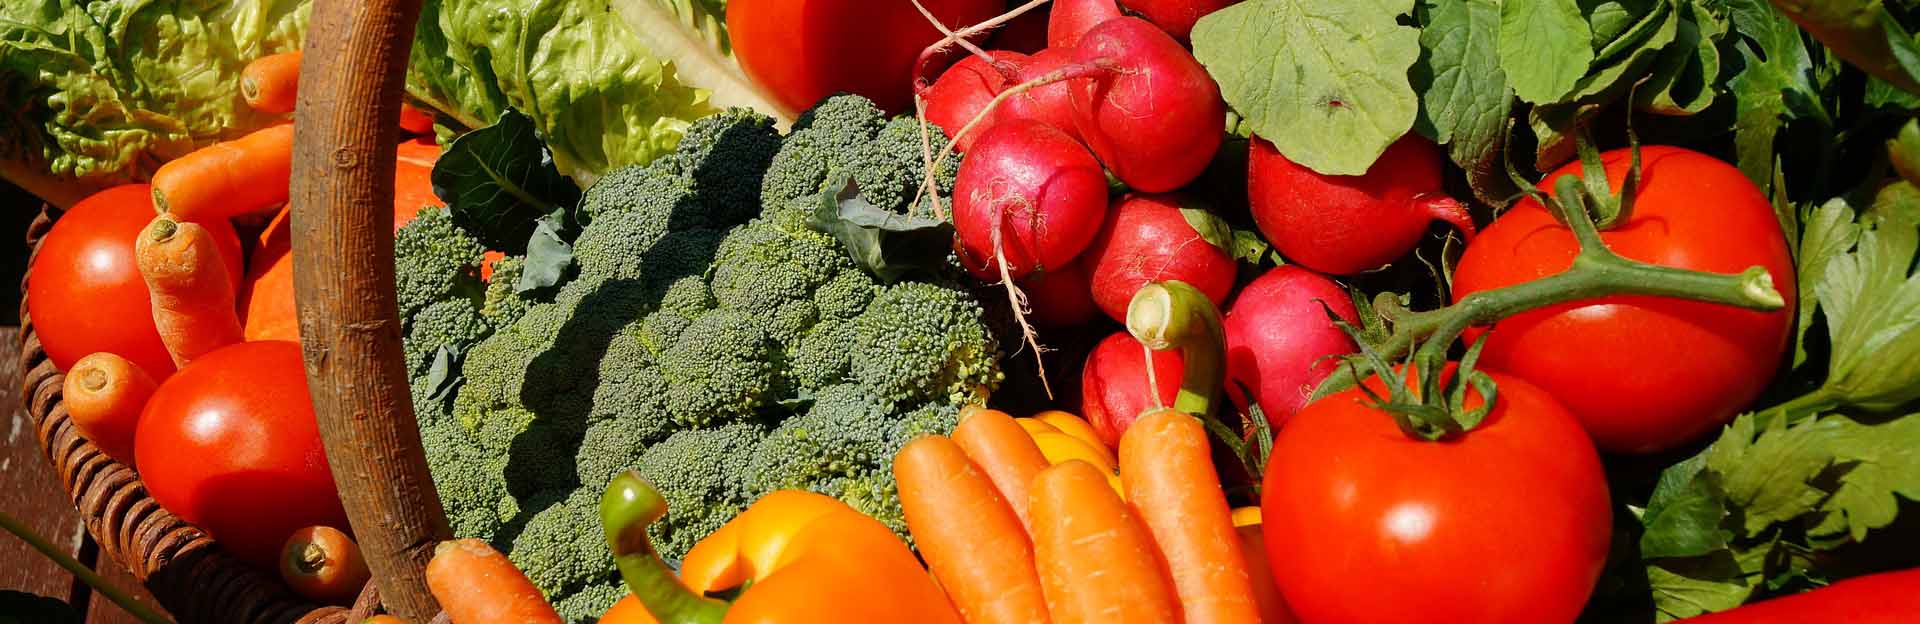 Mixed vegetables in basket / pixabay.com